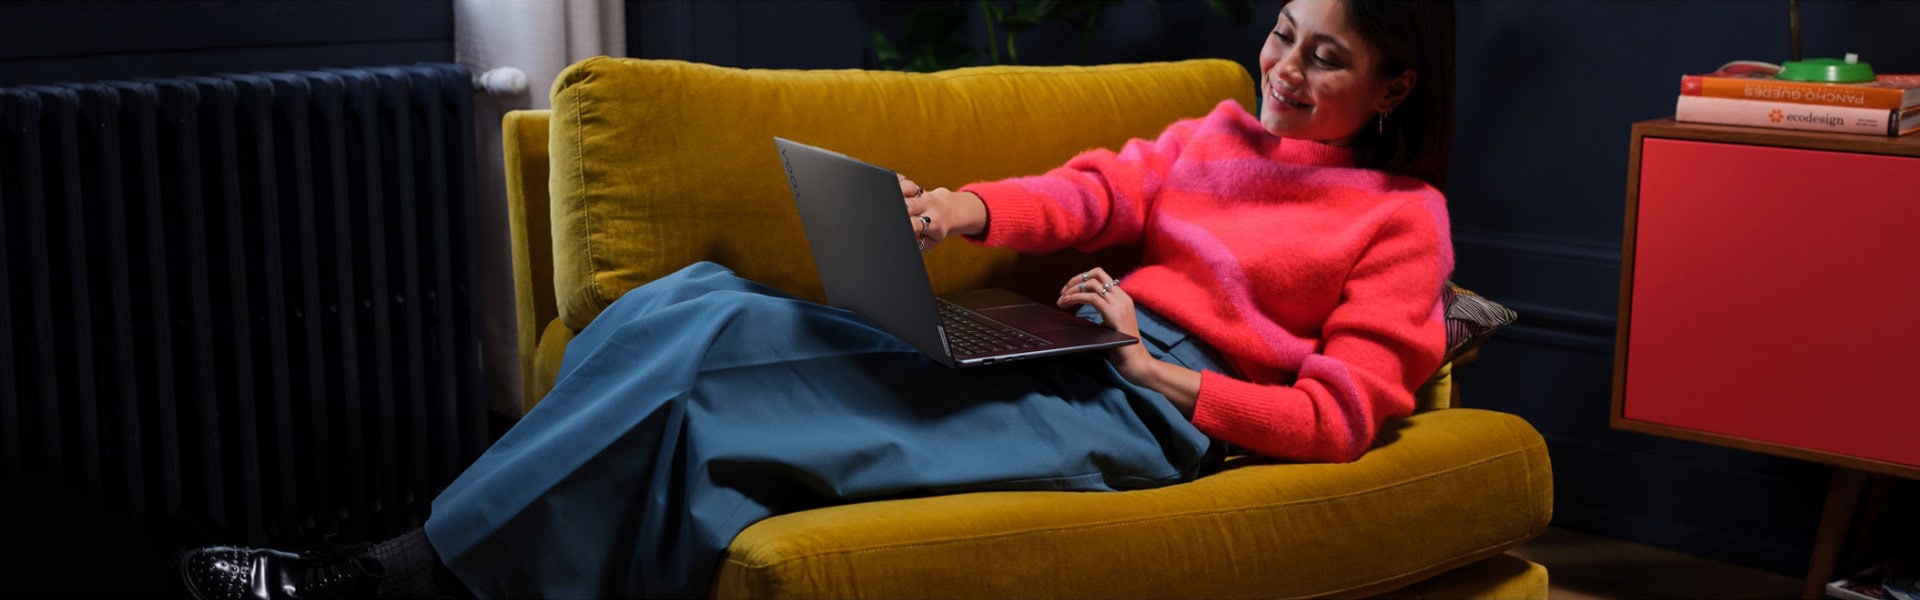 Mujer recostada en una butaca grande con su portátil Lenovo Yoga en el regazo